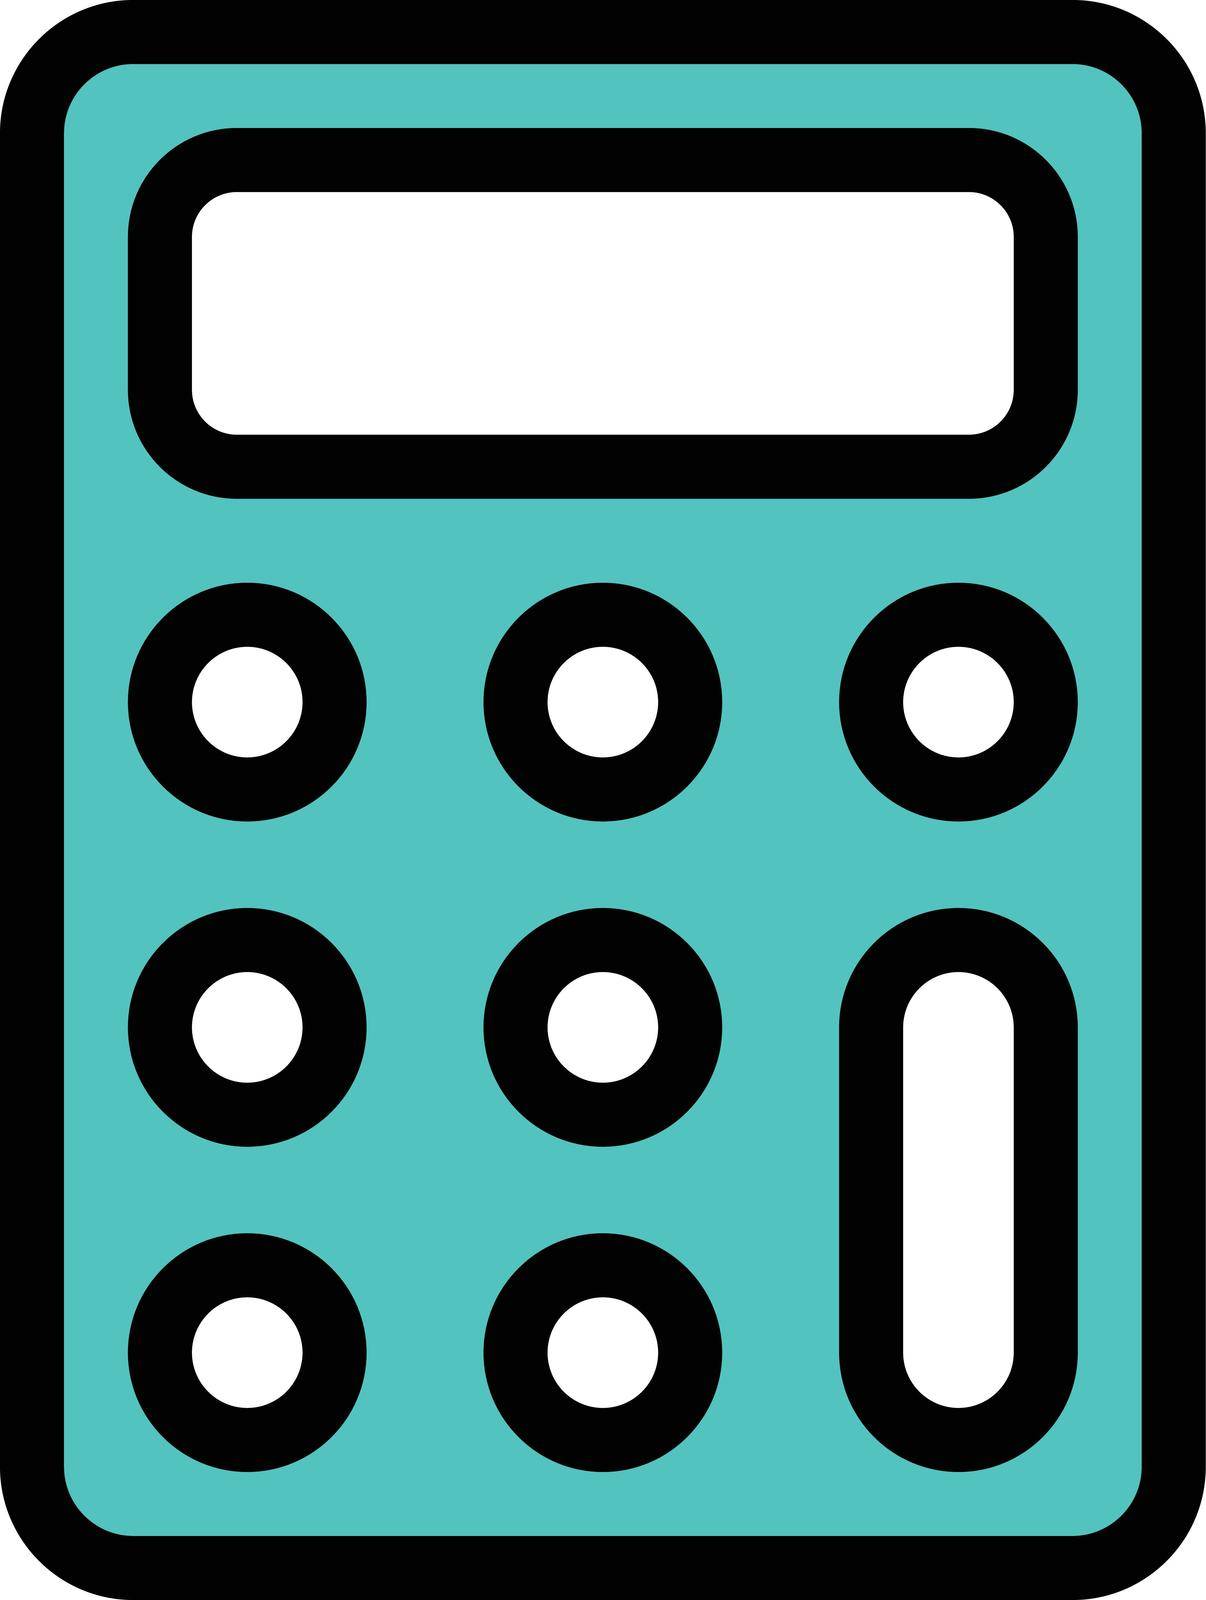 calculator vector colour line icon